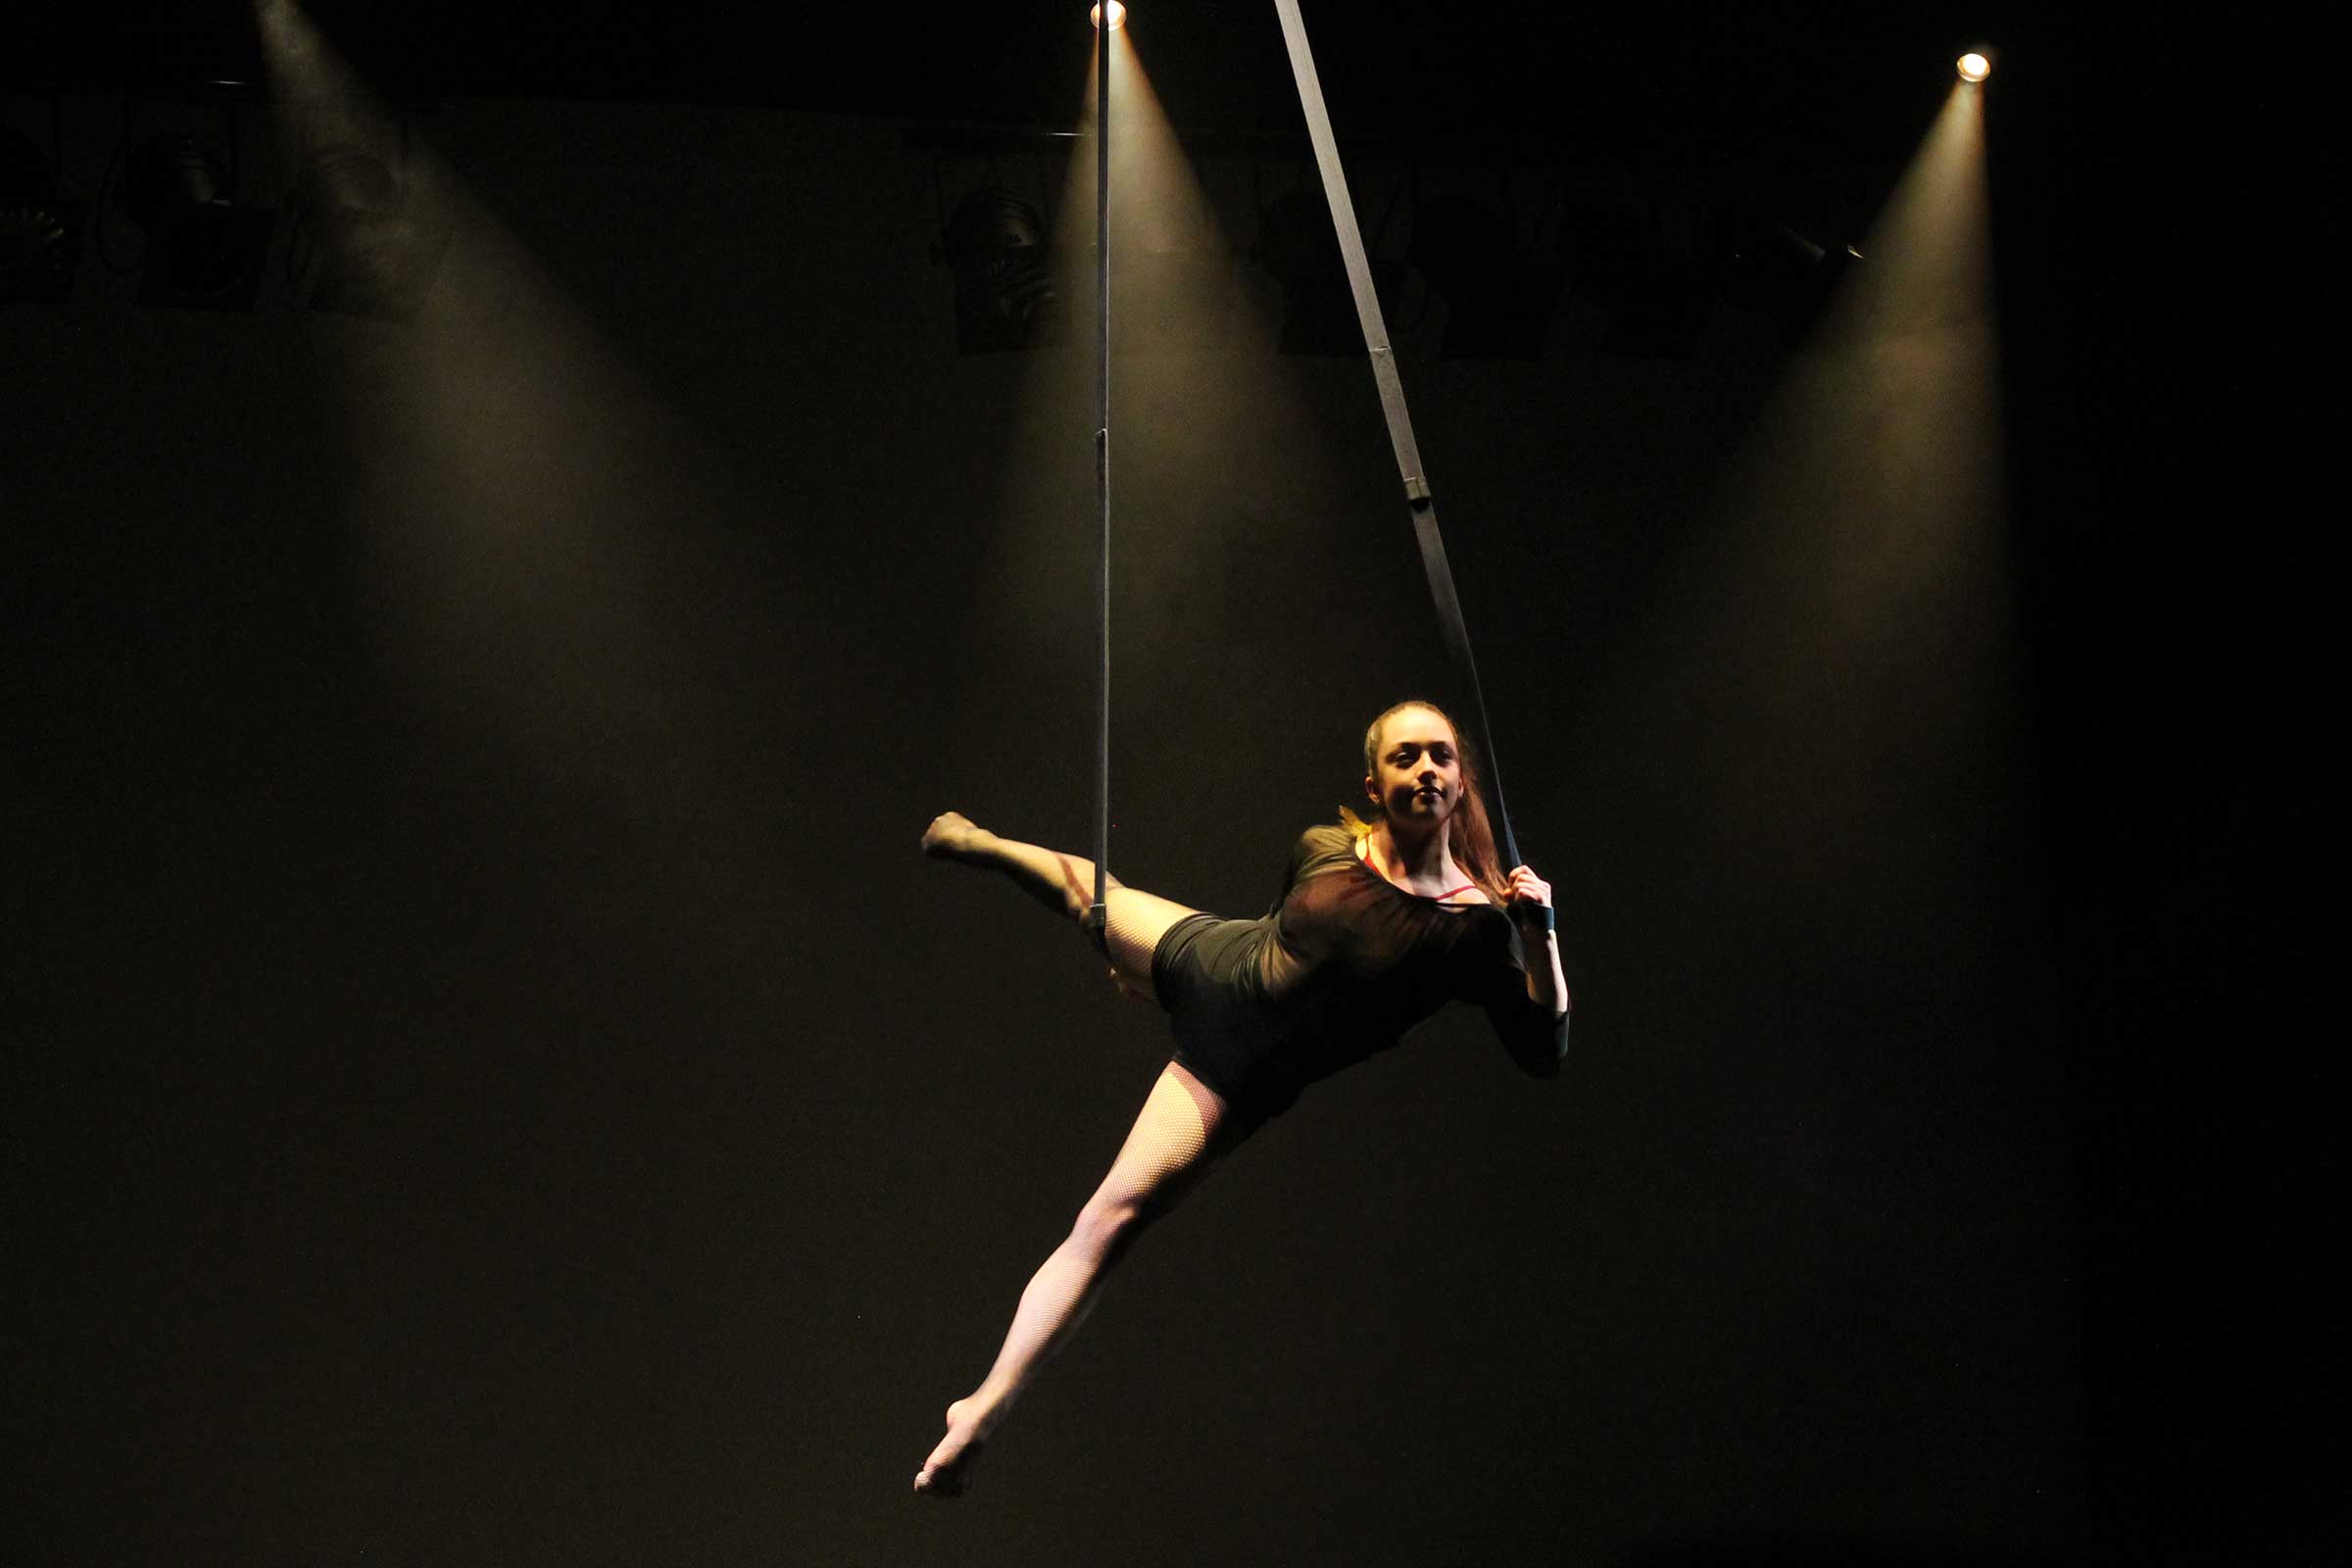 Eine Artistin hängt in Seilen in der Luft